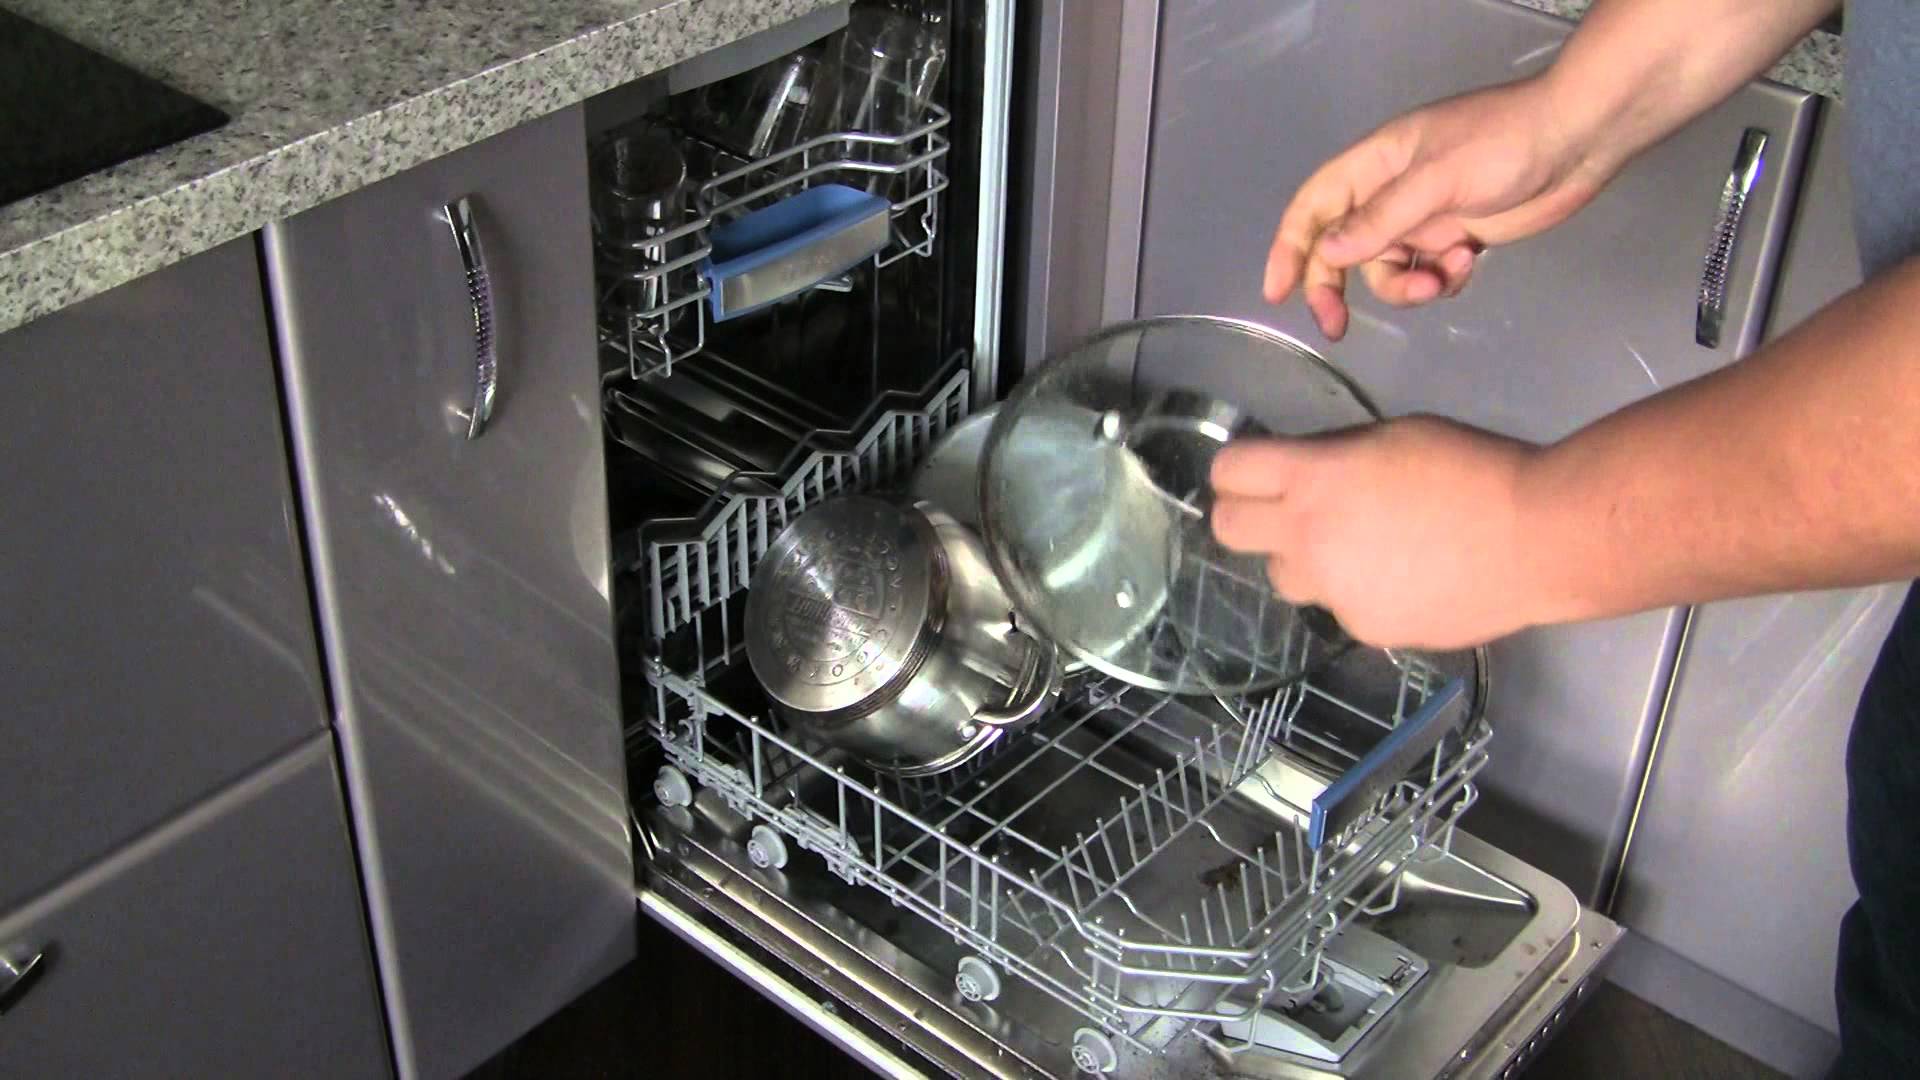 Кастрюли можно мыть в посудомойке. Кастрюли в посудомойке. Кастрюля в посудомоечной машине. Посуда в посудомойке. Посудомойка для кастрюль и сковородок.